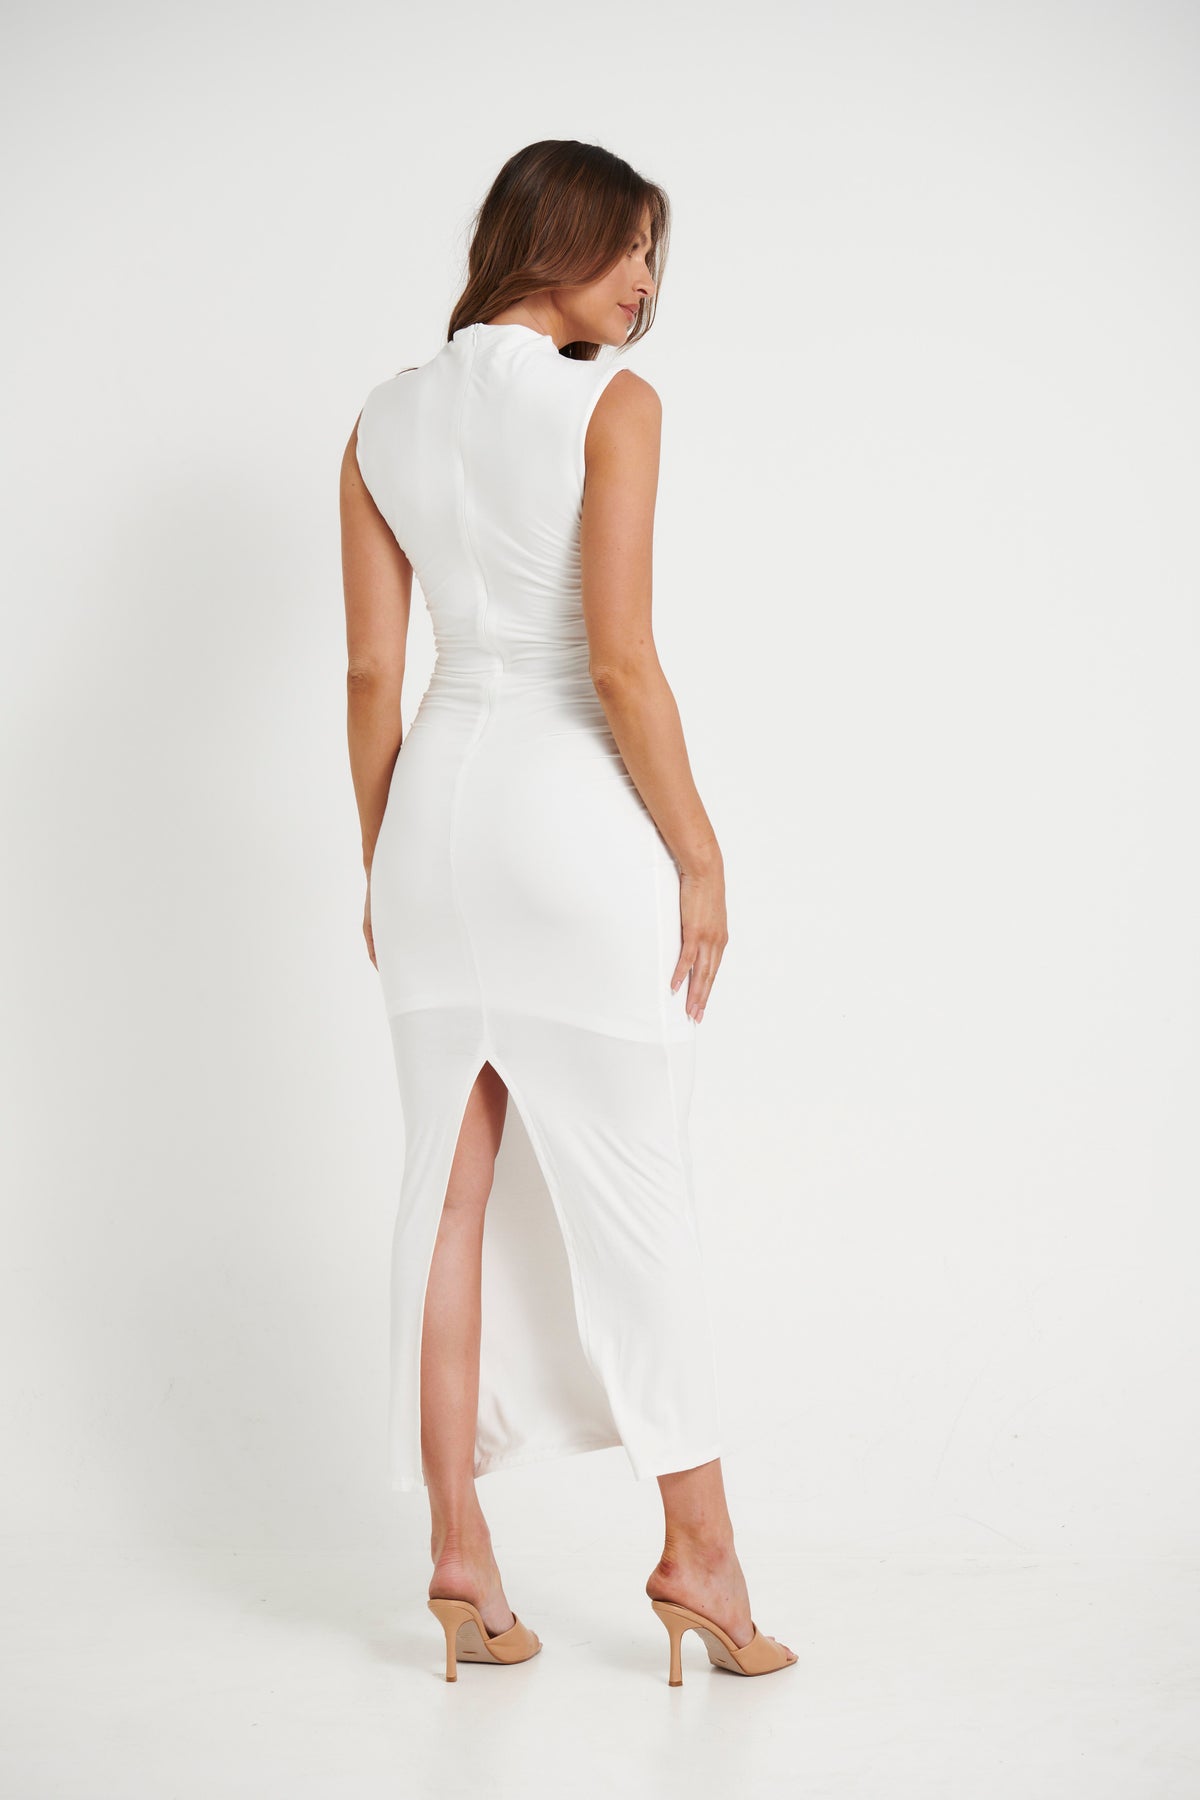 Zara Maxi Dress White - FINAL SALE